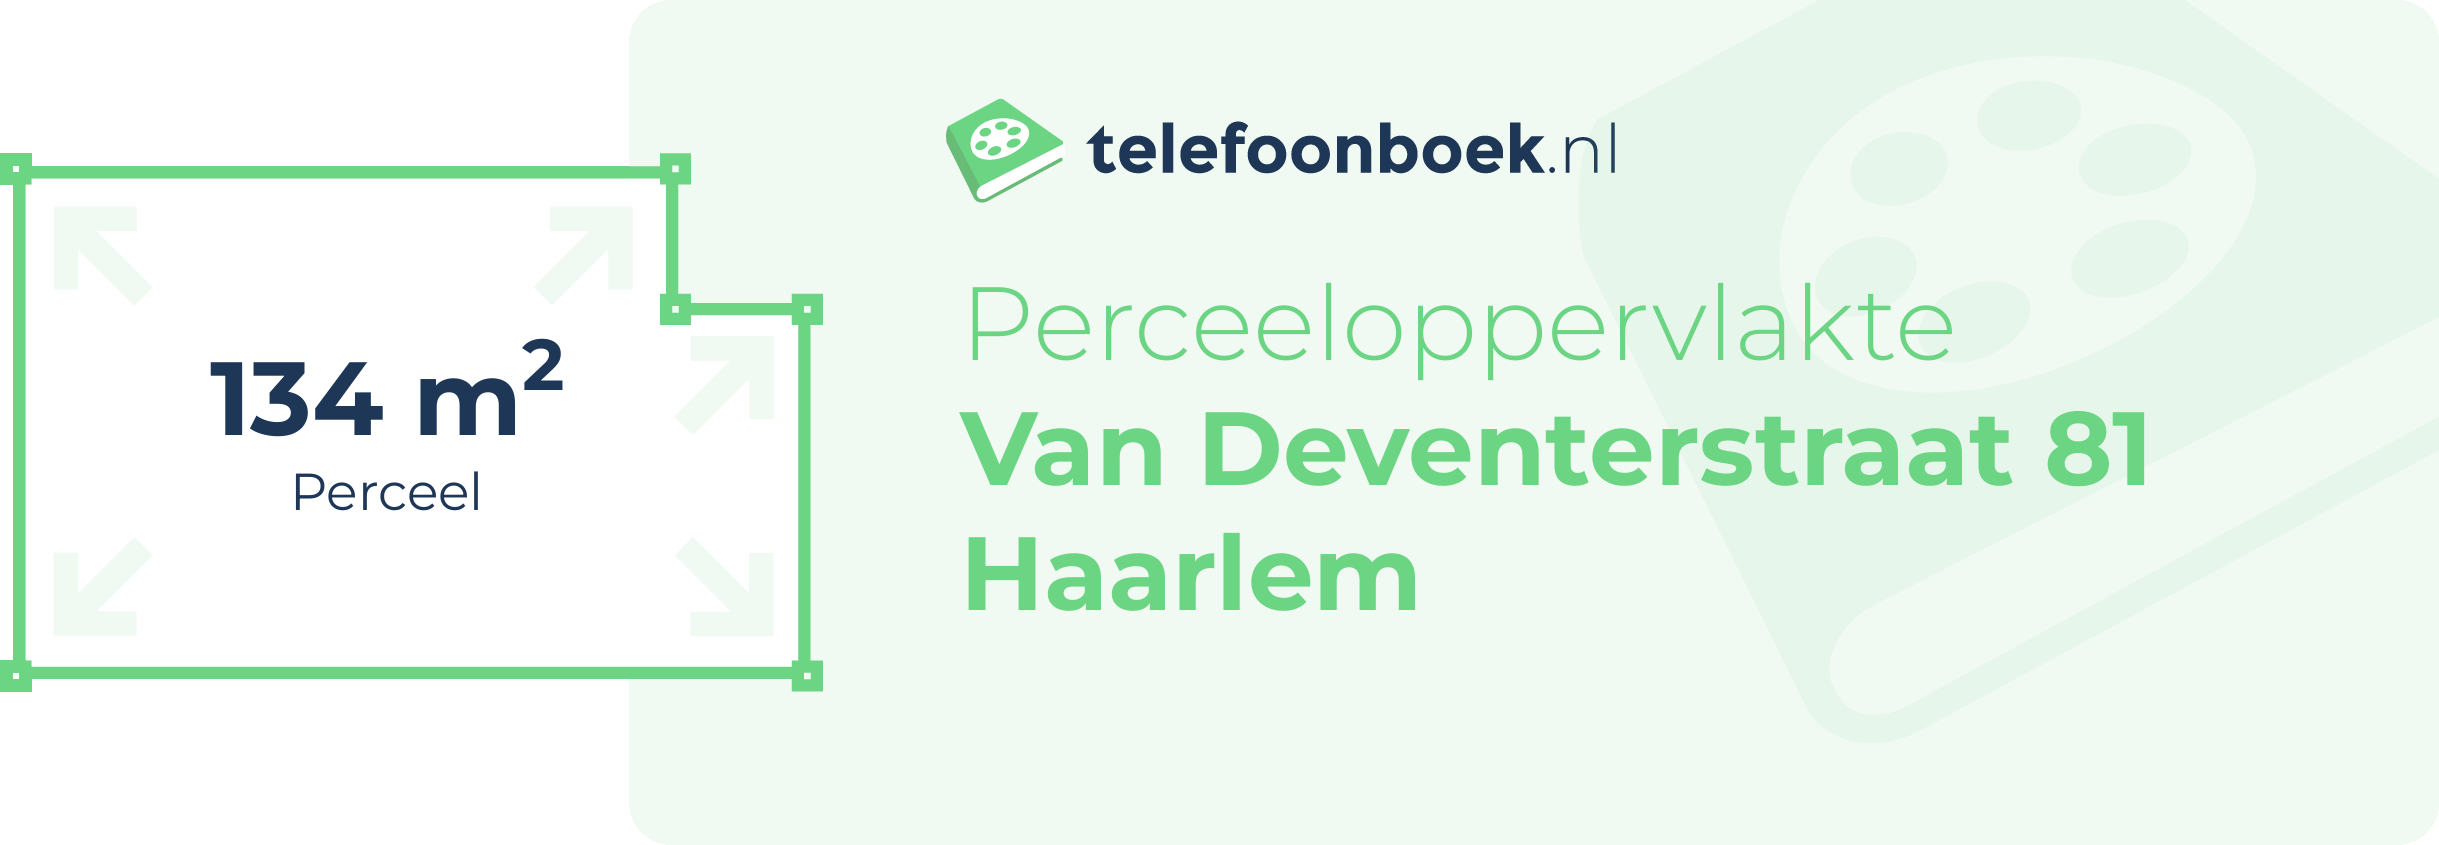 Perceeloppervlakte Van Deventerstraat 81 Haarlem